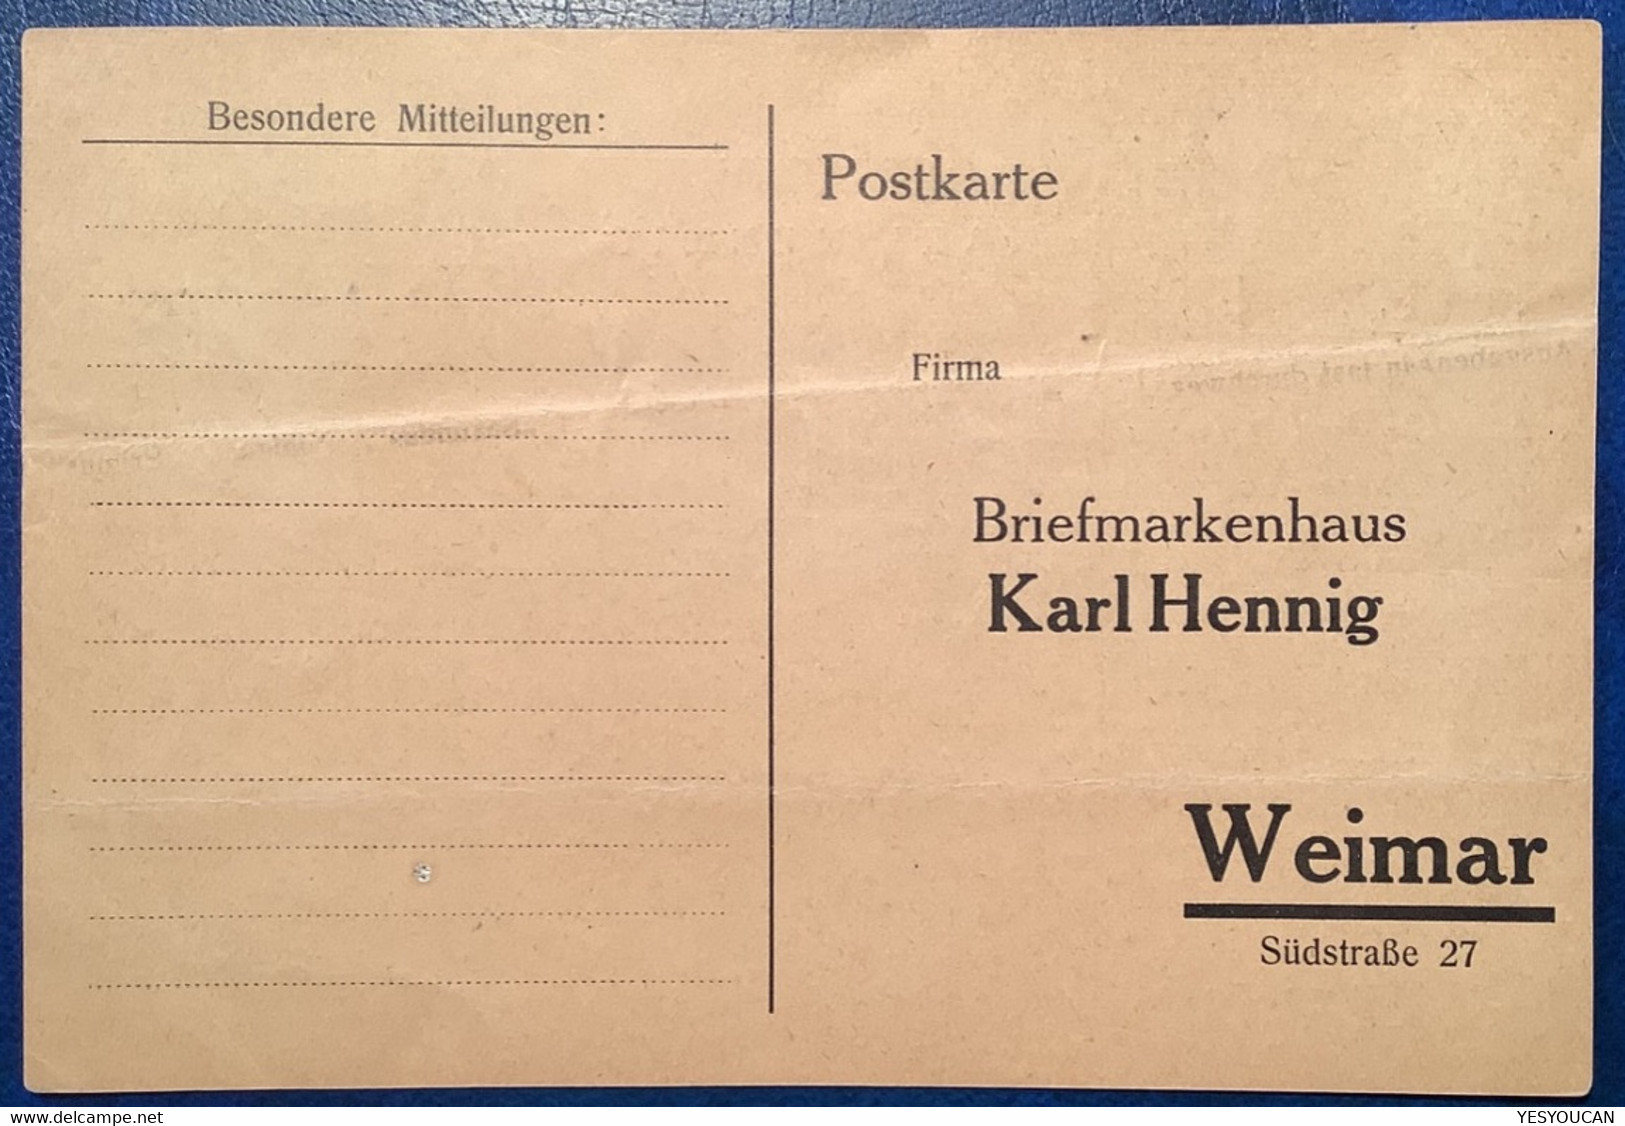 KARL HENNIG WEIMAR BRIEFMARKENHÄNDLER Werbung-Aufdruck 1923 D.R Infla (German Stamp Dealer Publicity Label Germany - Nuevos